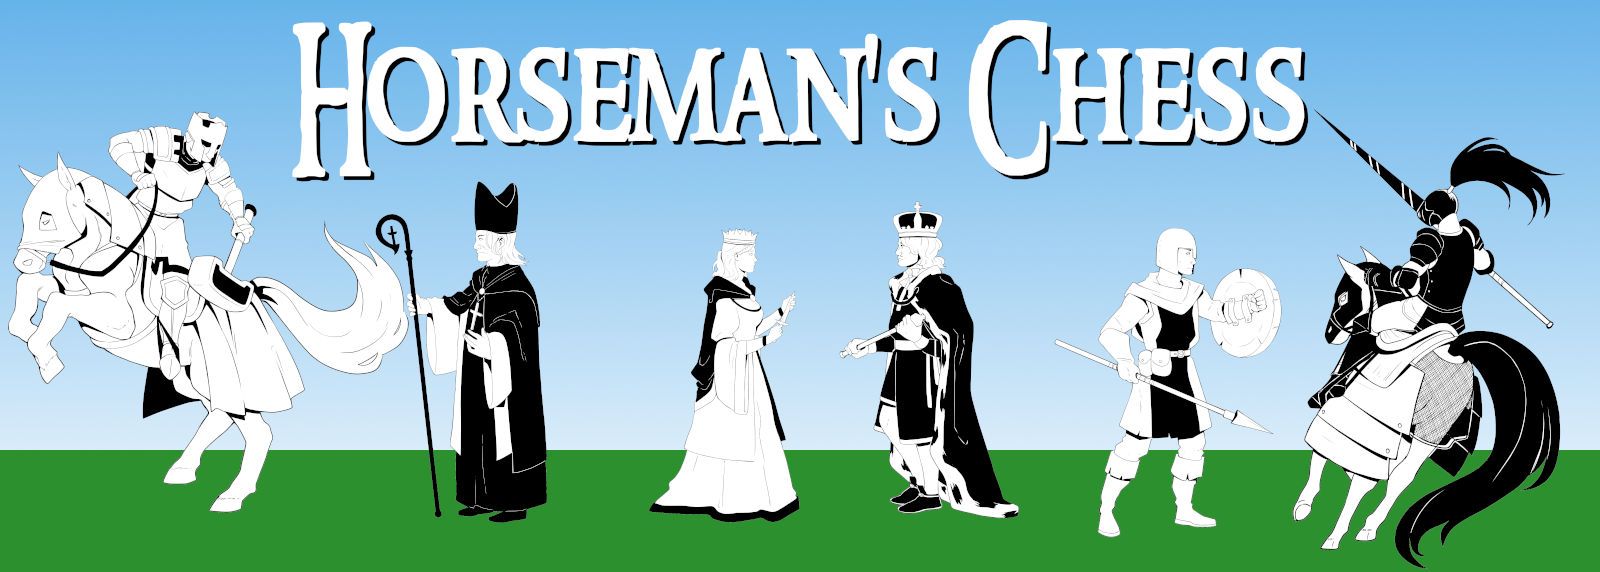 Horseman's Chess PnP